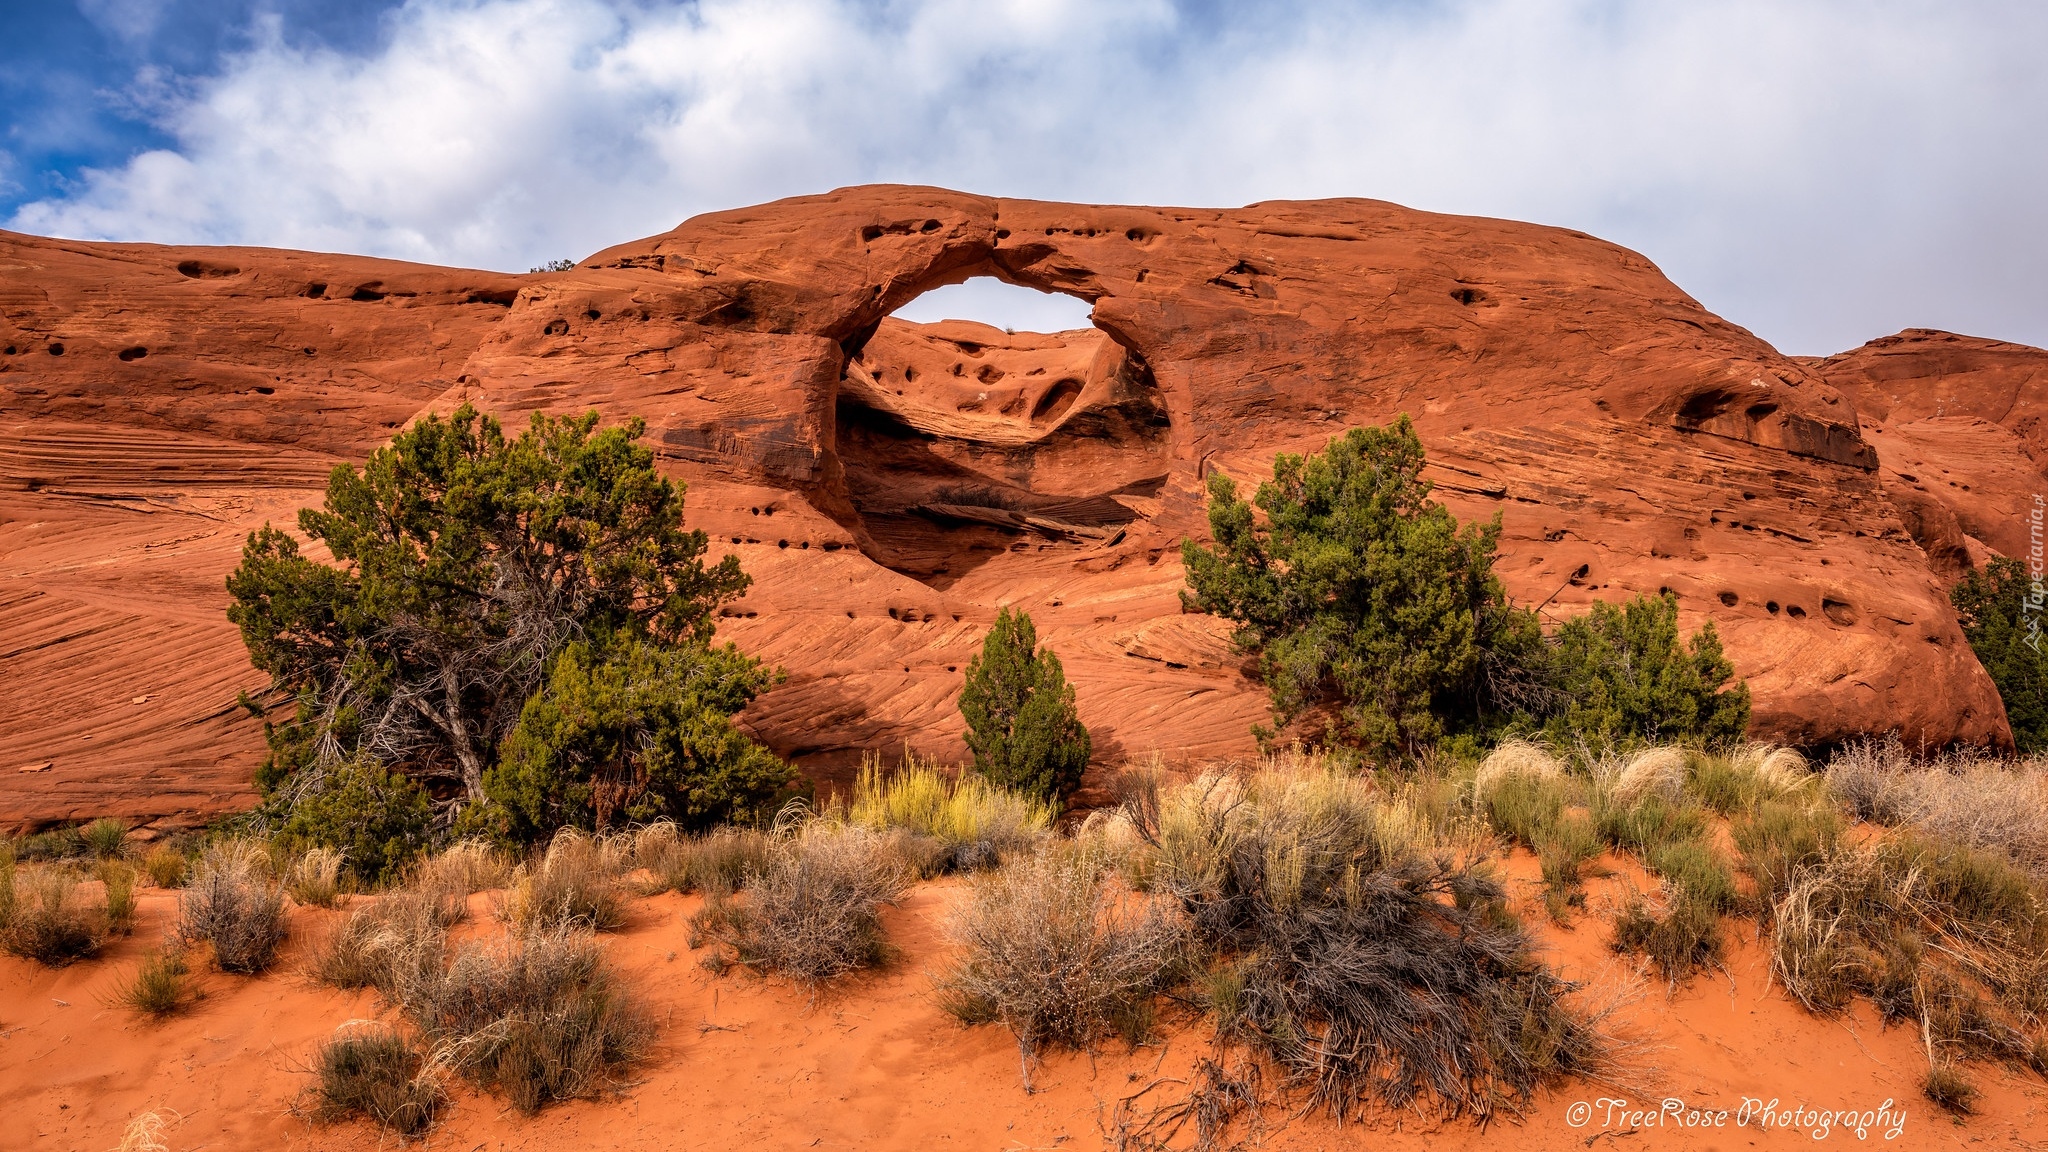 Stany Zjednoczone, Arizona, Dolina, Monument Valley, Skały, Formacja skalna, Honeymoon Arch, Drzewa, Krzewy